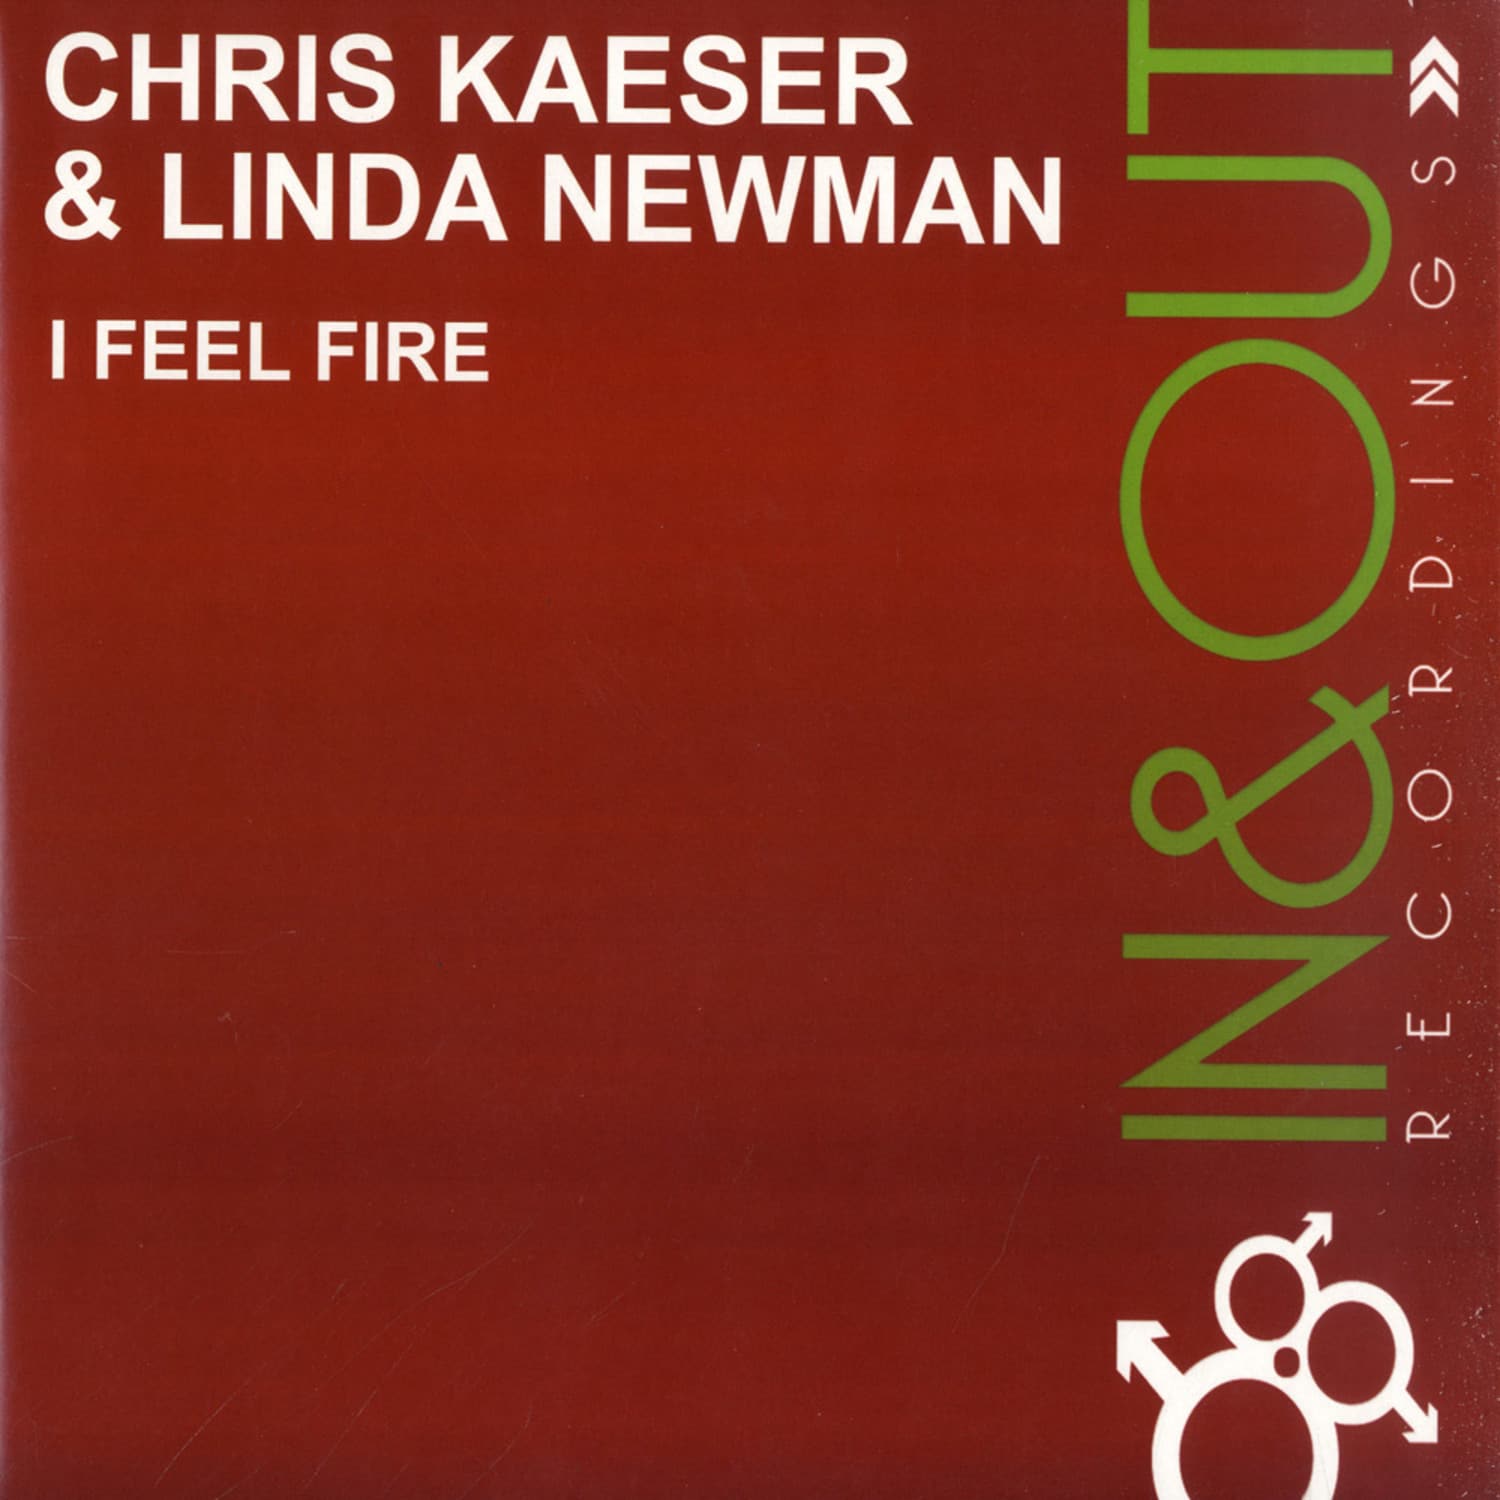 Chris Kaeser - I FEEL FIRE